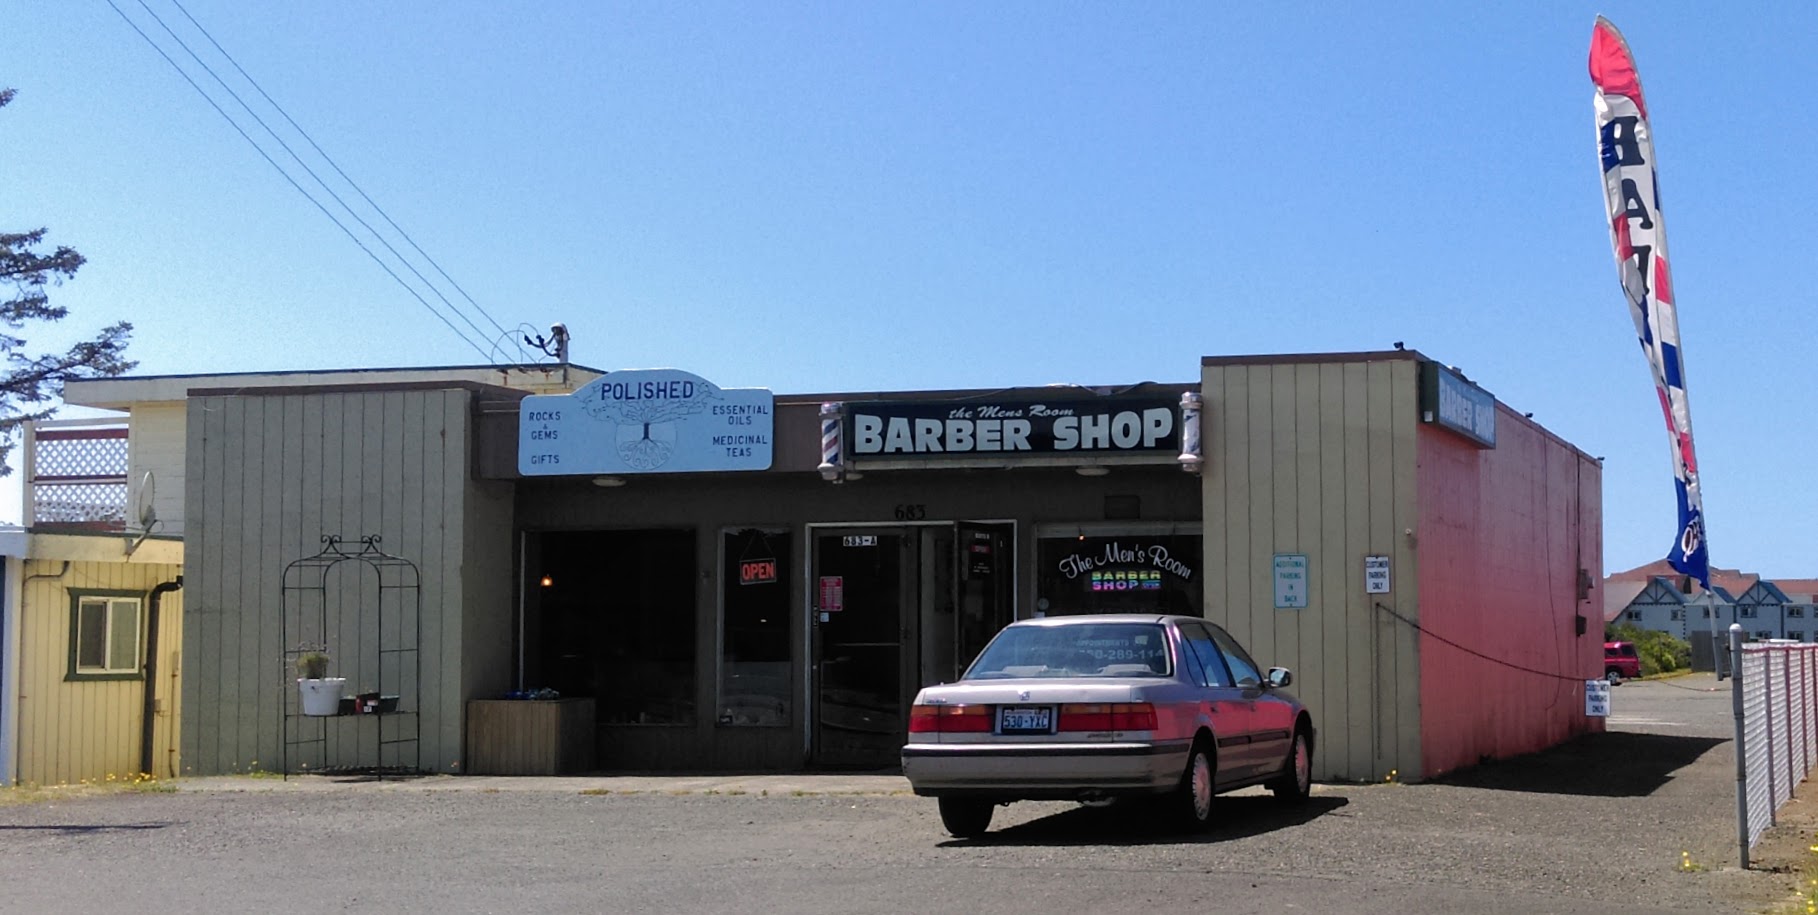 Men's Room Barber Shop